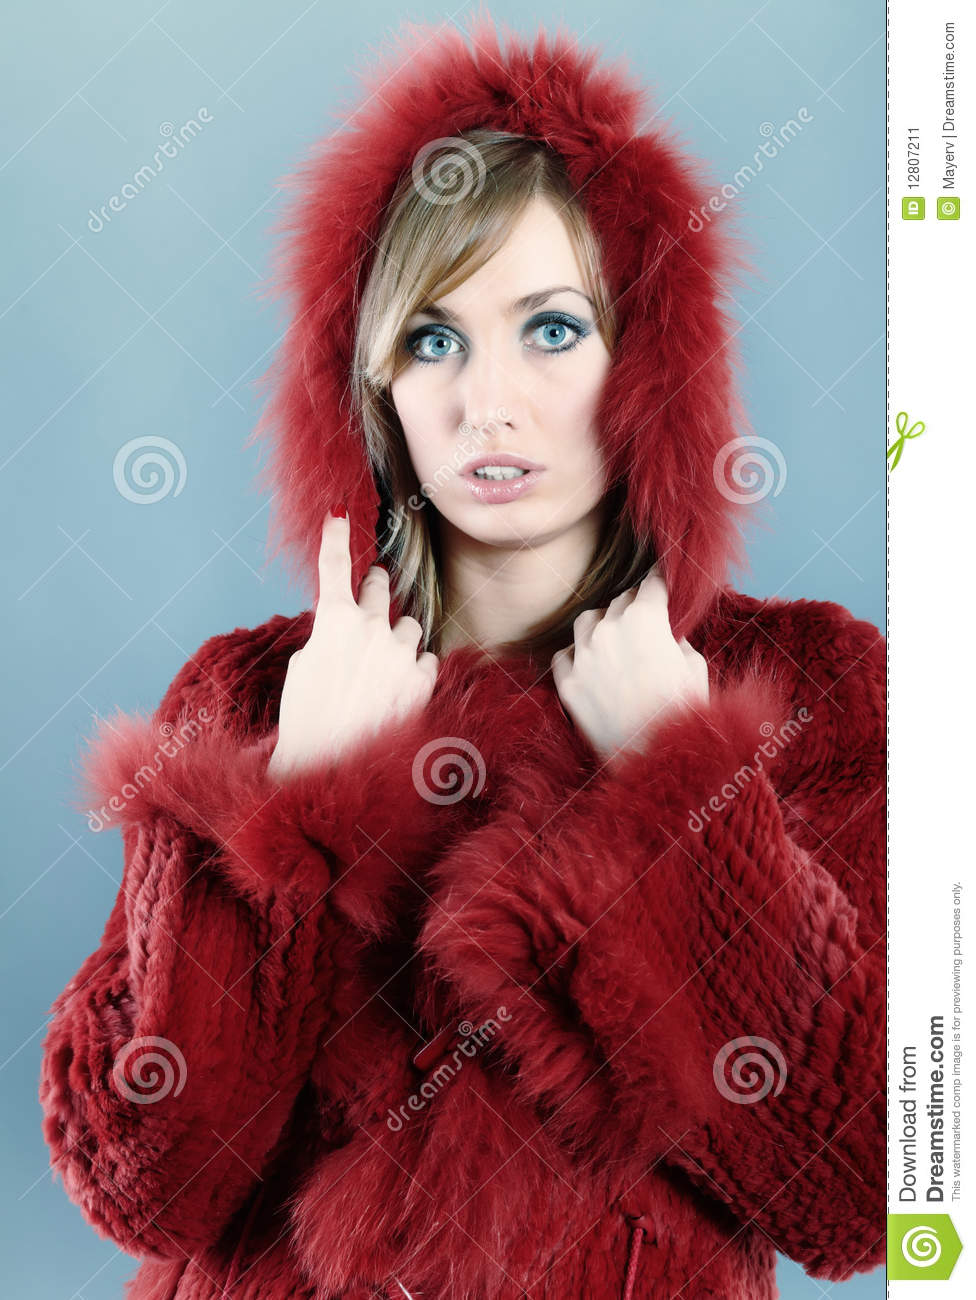 Woman In Fur Winter Coat Stock Image   Image  12807211